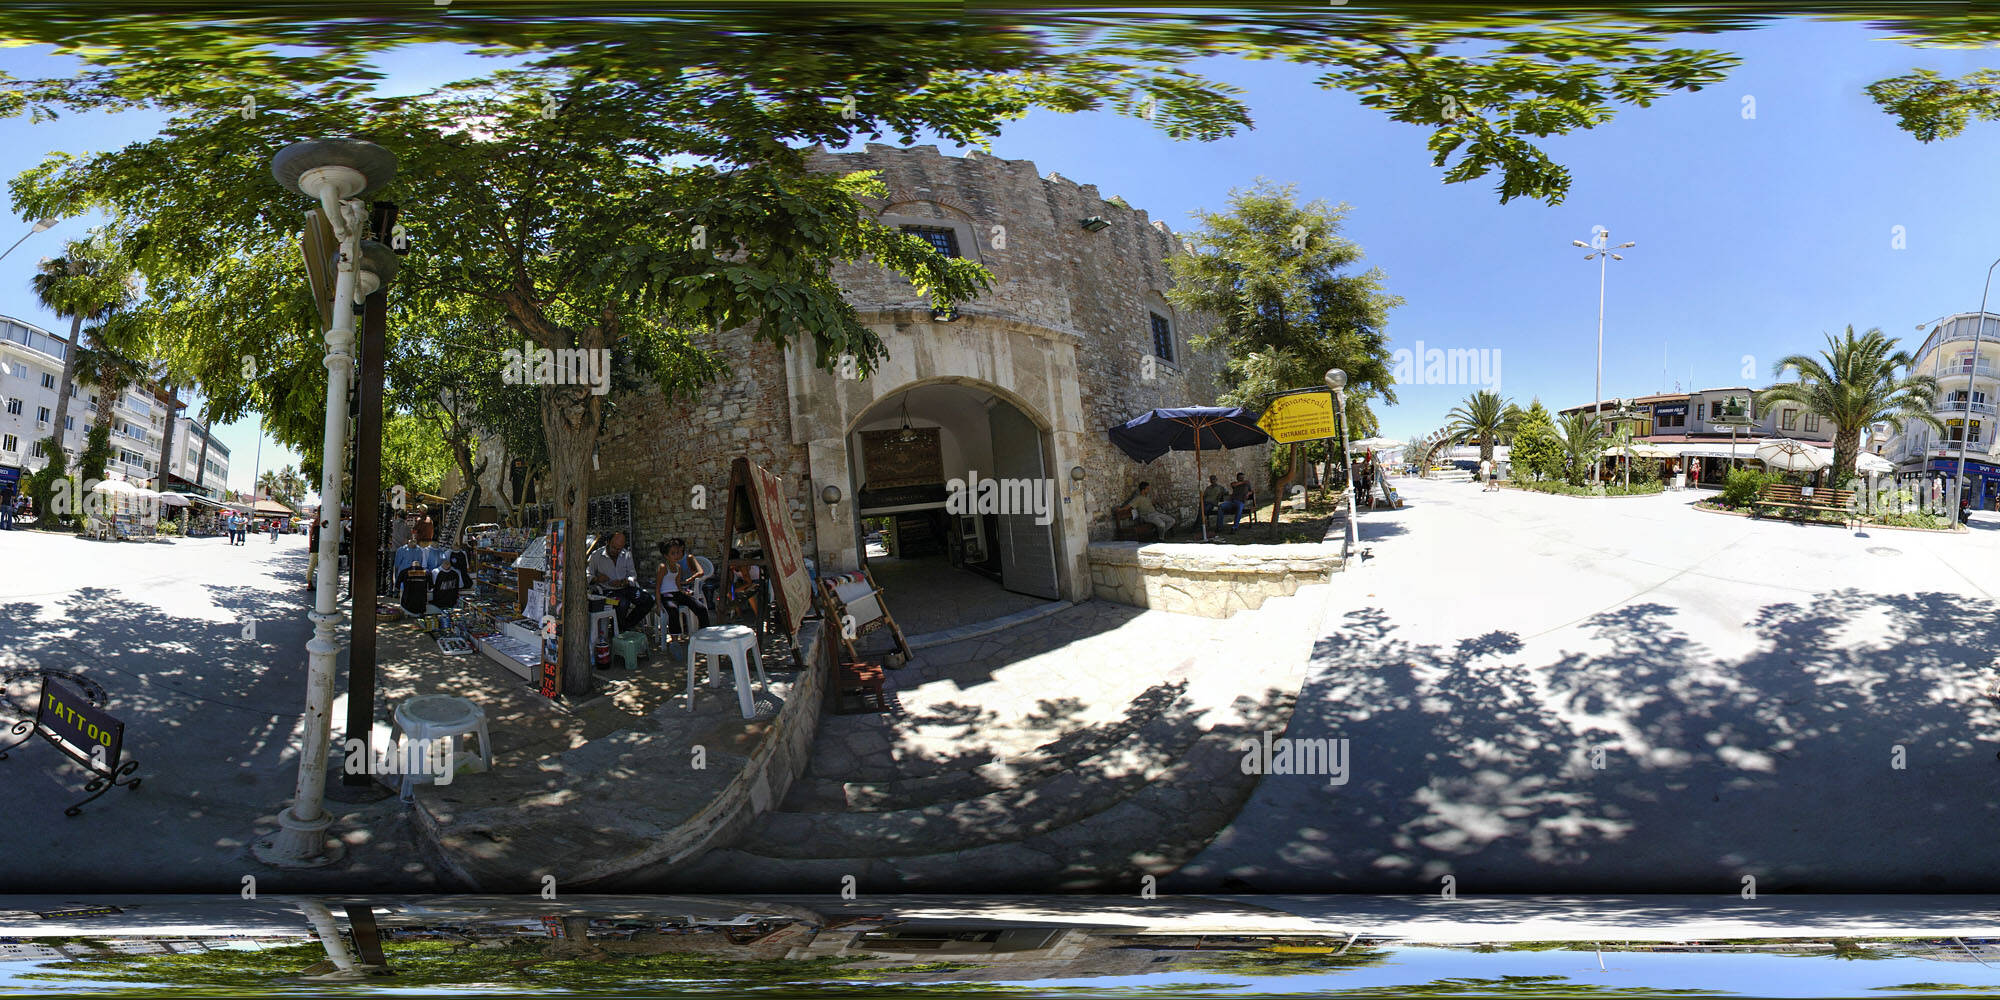 360 degree panoramic view of Inside the Karavanserei